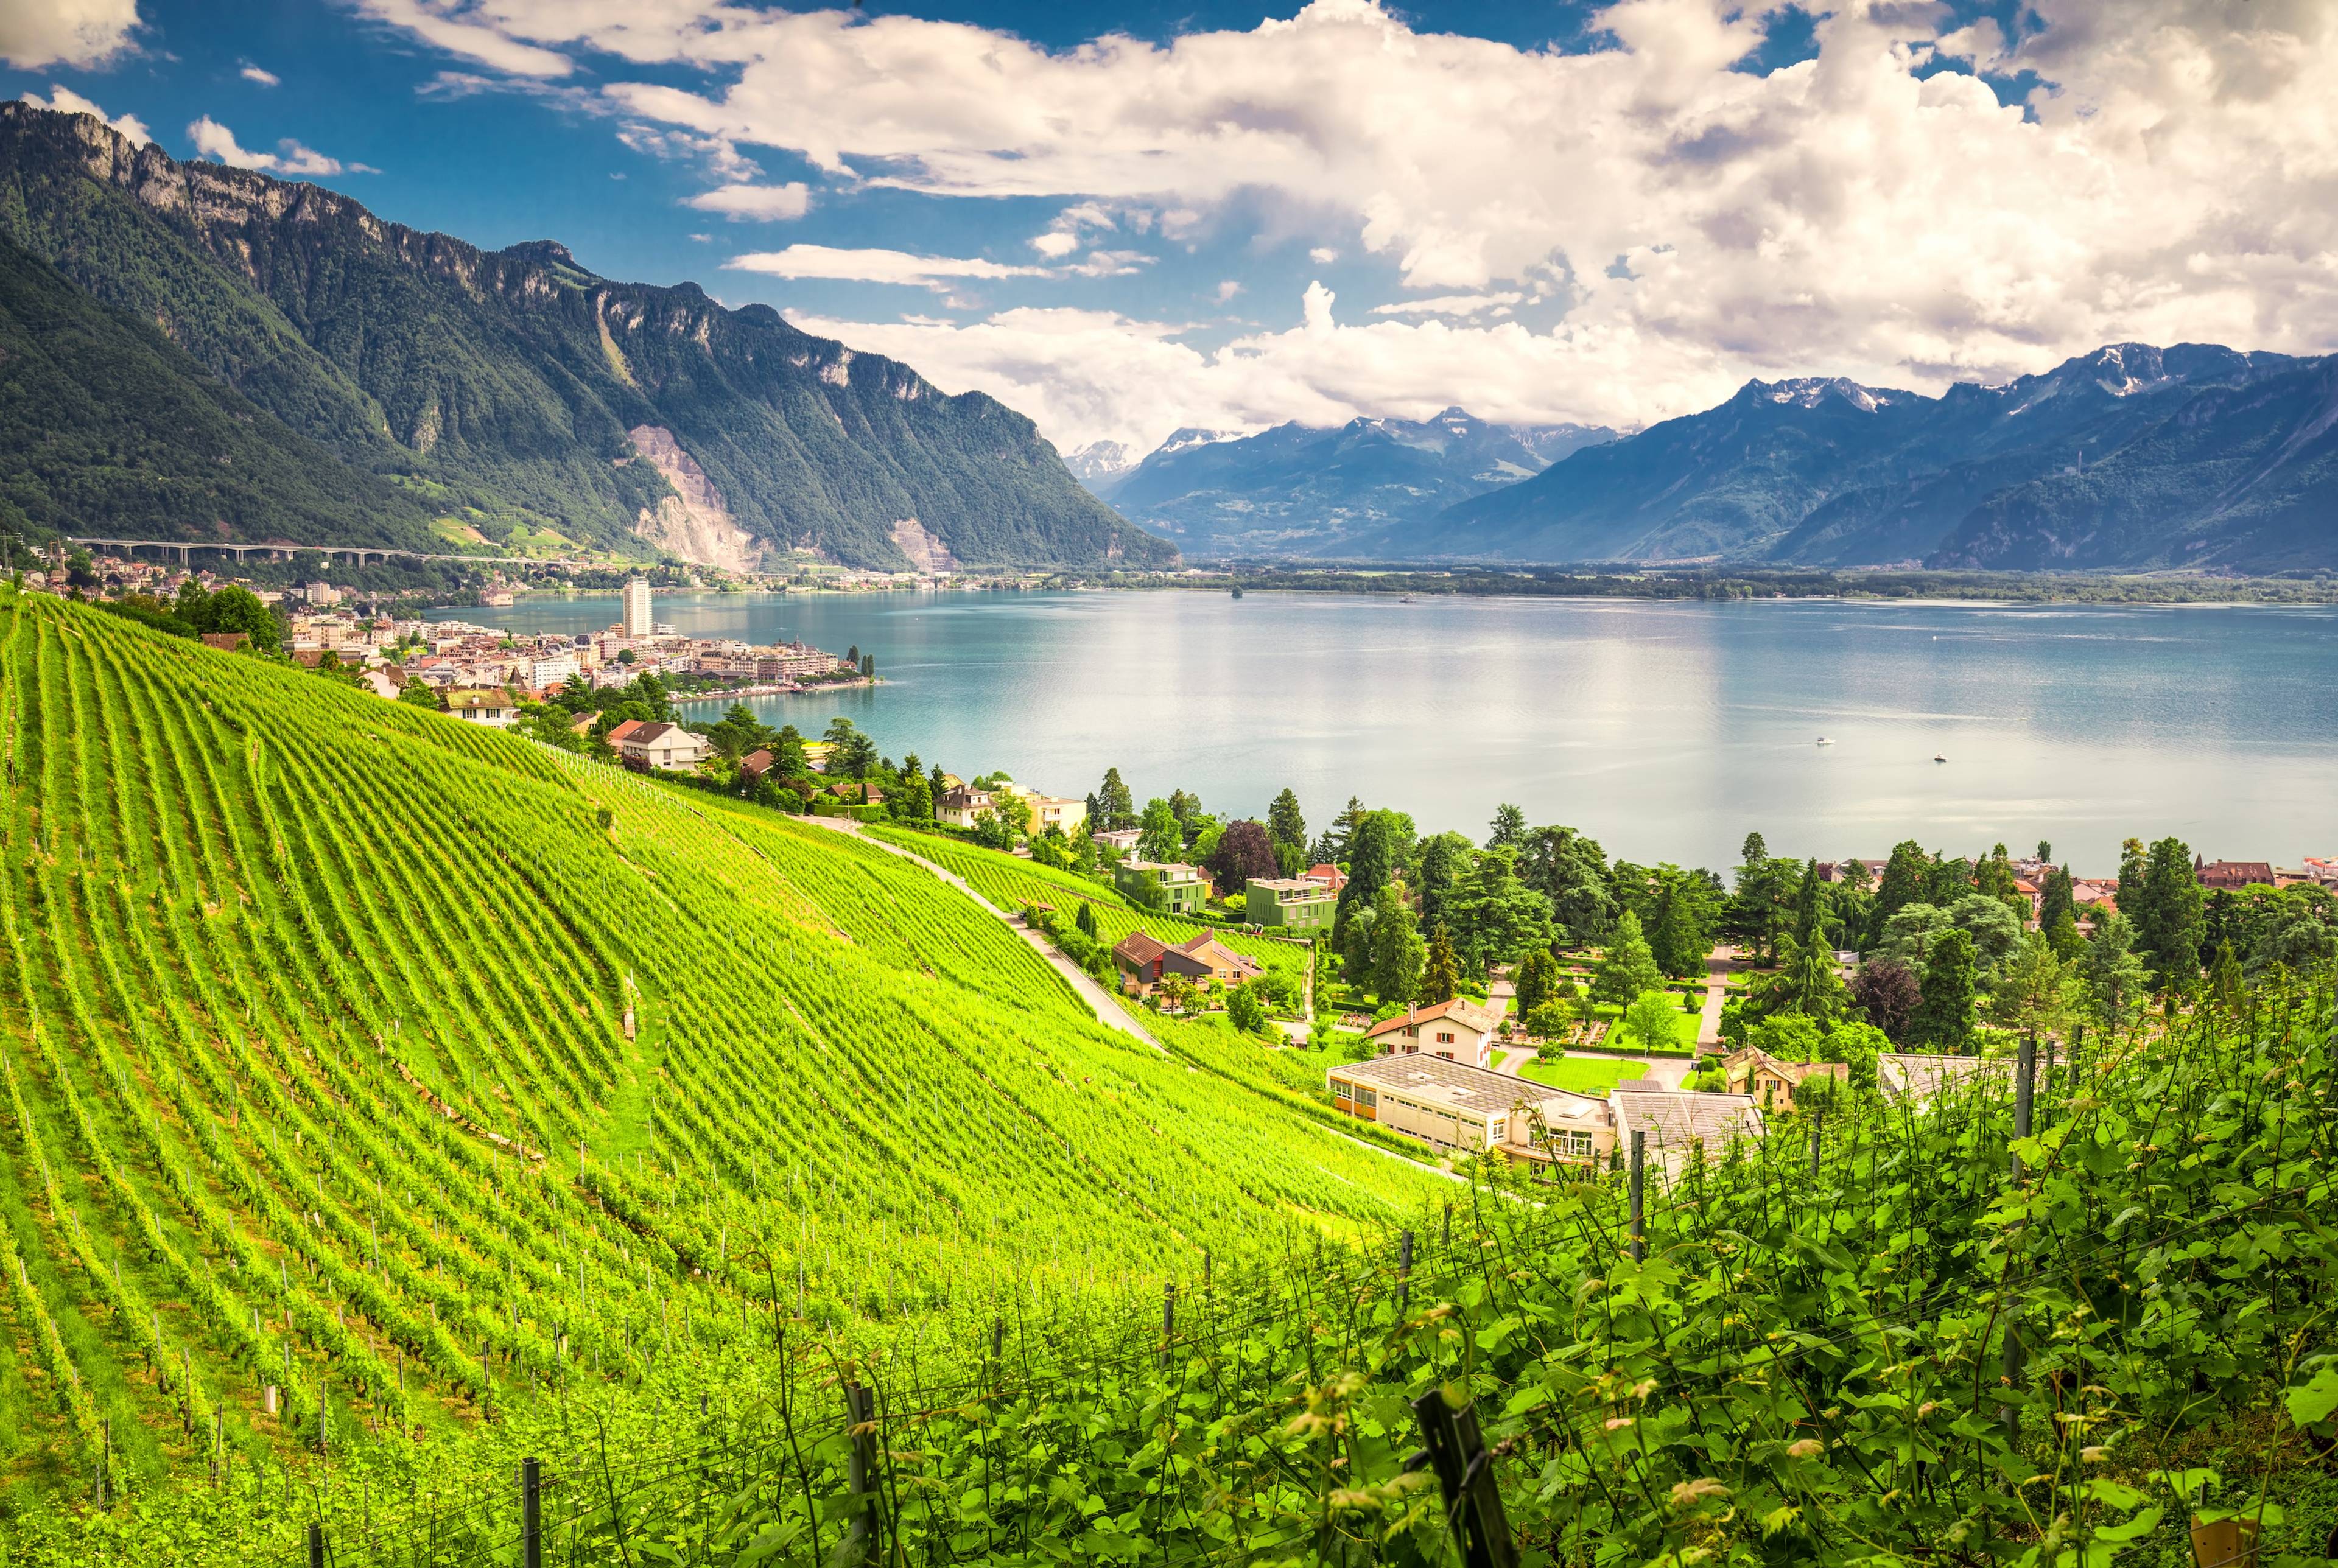 Lavaux e Montreux: Il meglio del Lago Lemano